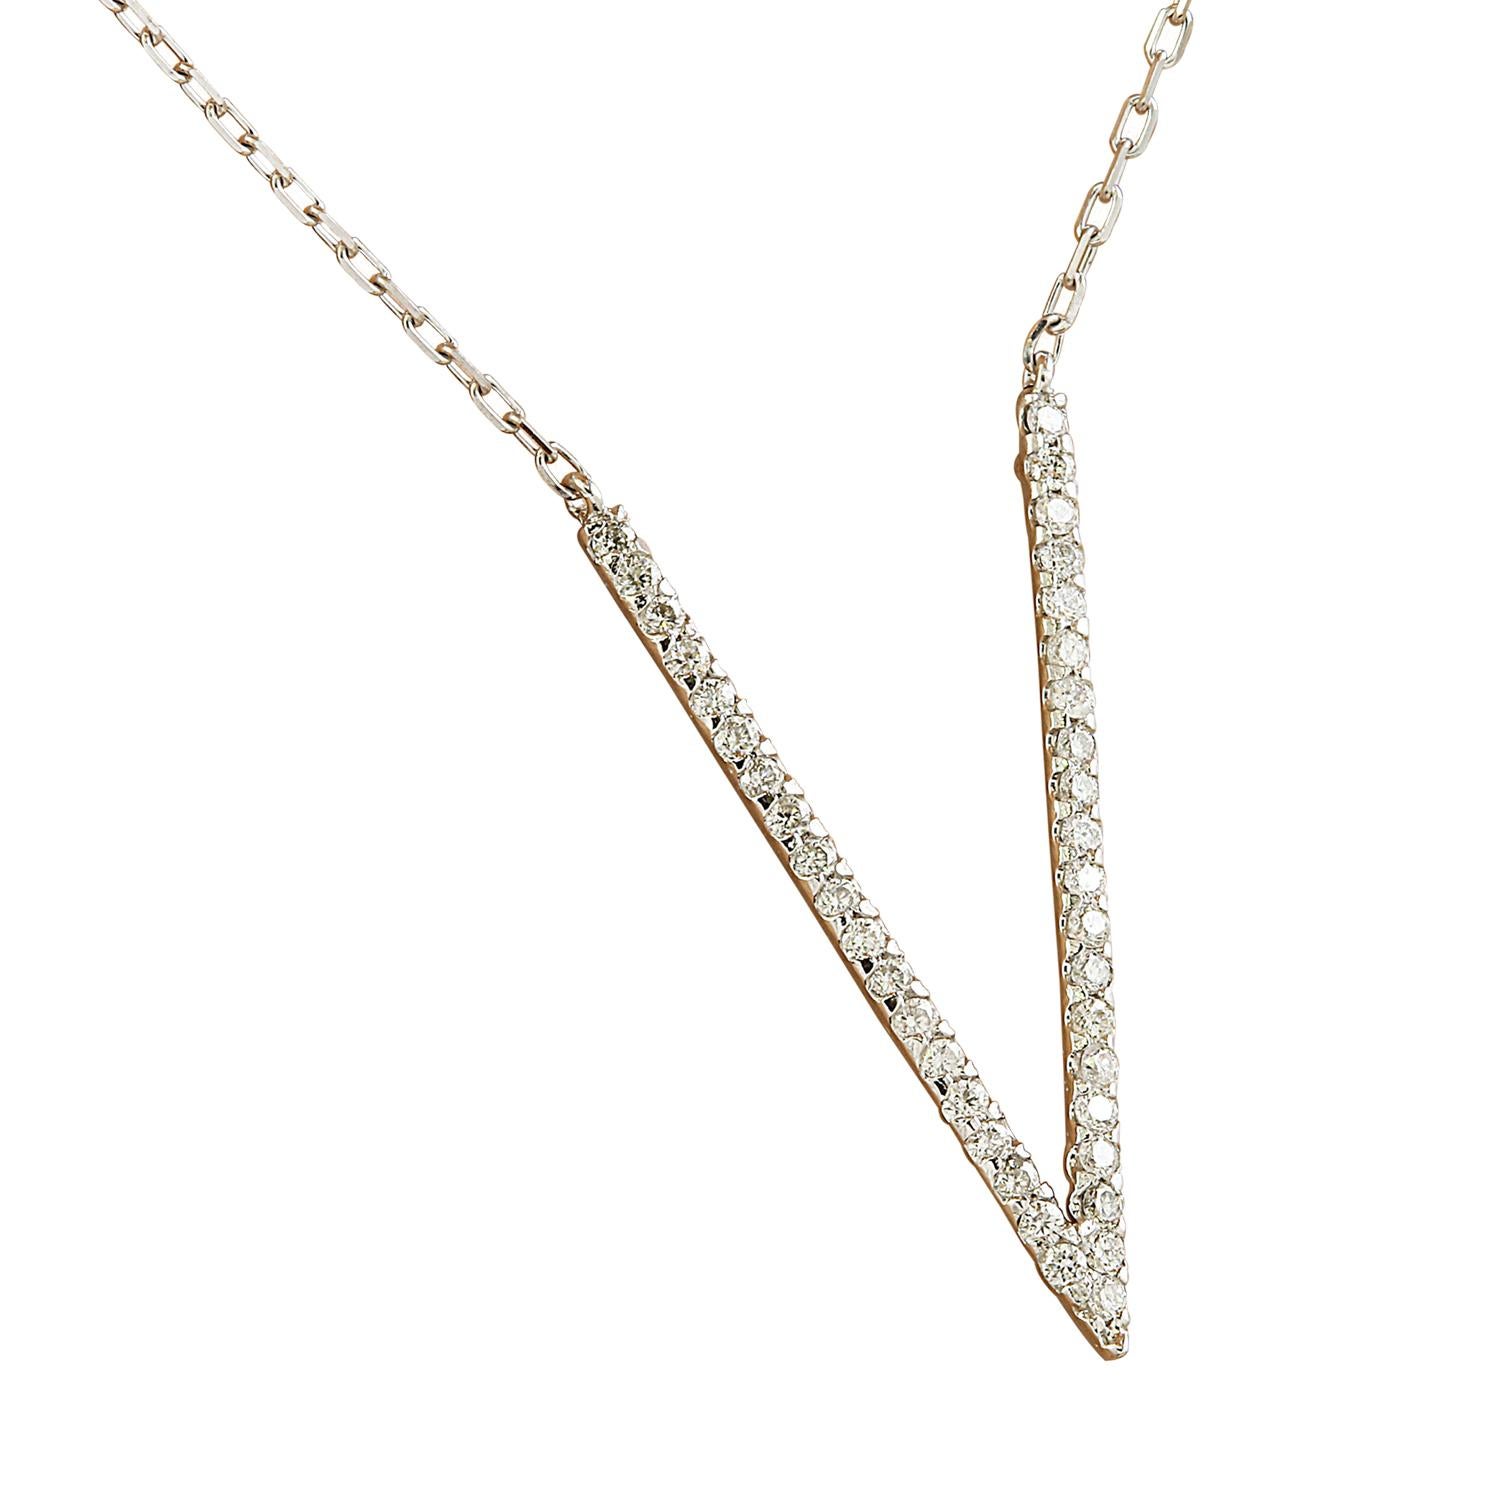 Voici notre exquis collier en forme de V en diamant naturel de 0,40 carat, réalisé en luxueux or blanc massif 14K. Estampillée pour l'authenticité, cette superbe pièce pèse 2 grammes et affiche une longueur de 15 pouces, parfaite pour une tenue